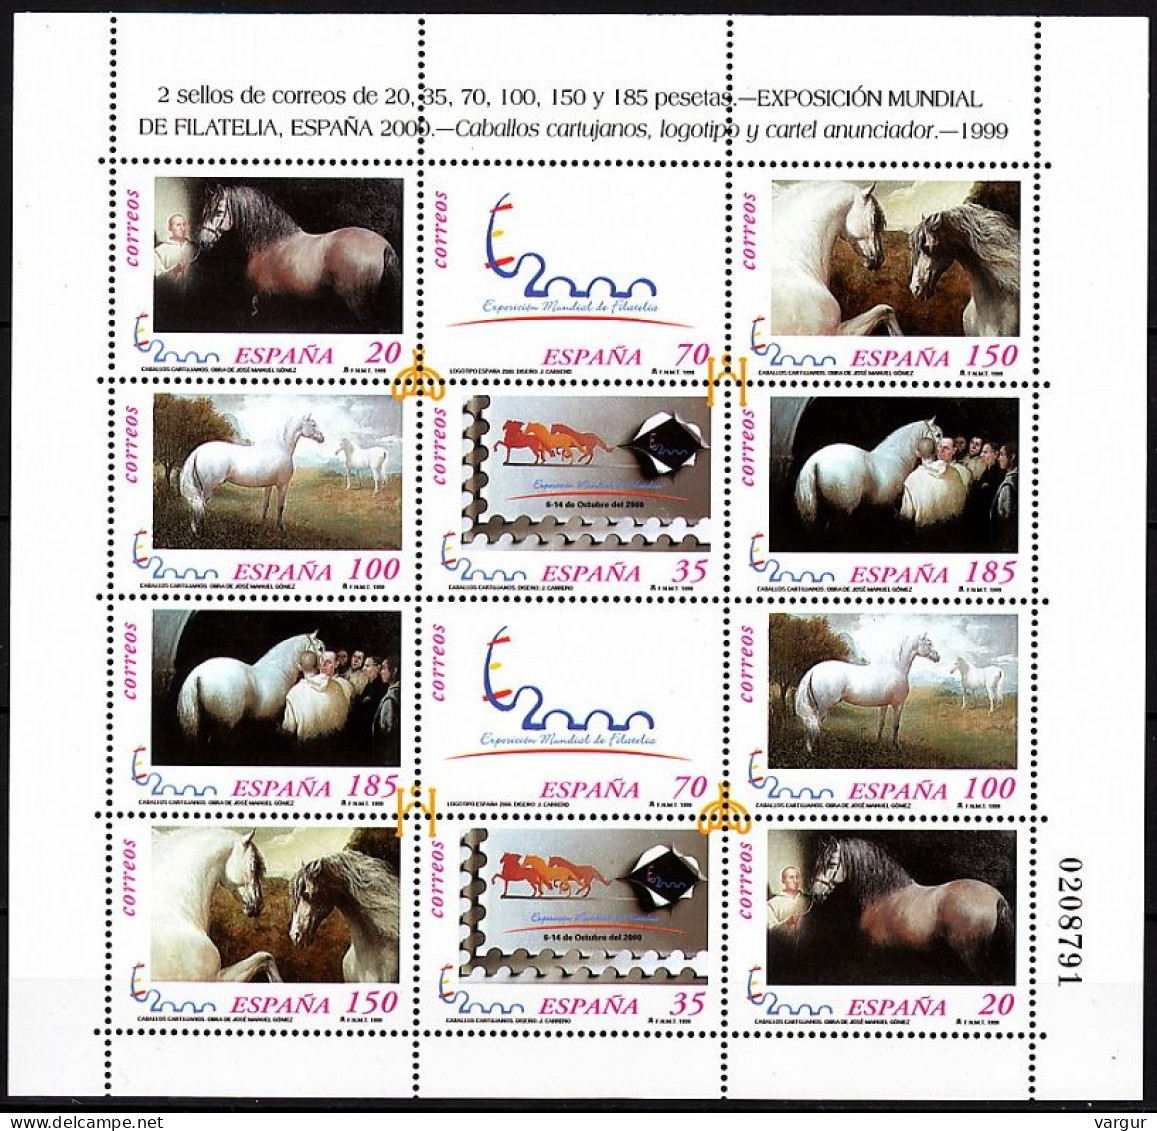 SPAIN 1999 Philately: Stamp Expo ESPANA-2000. Horses. MINI-SHEET, MNH - Caballos